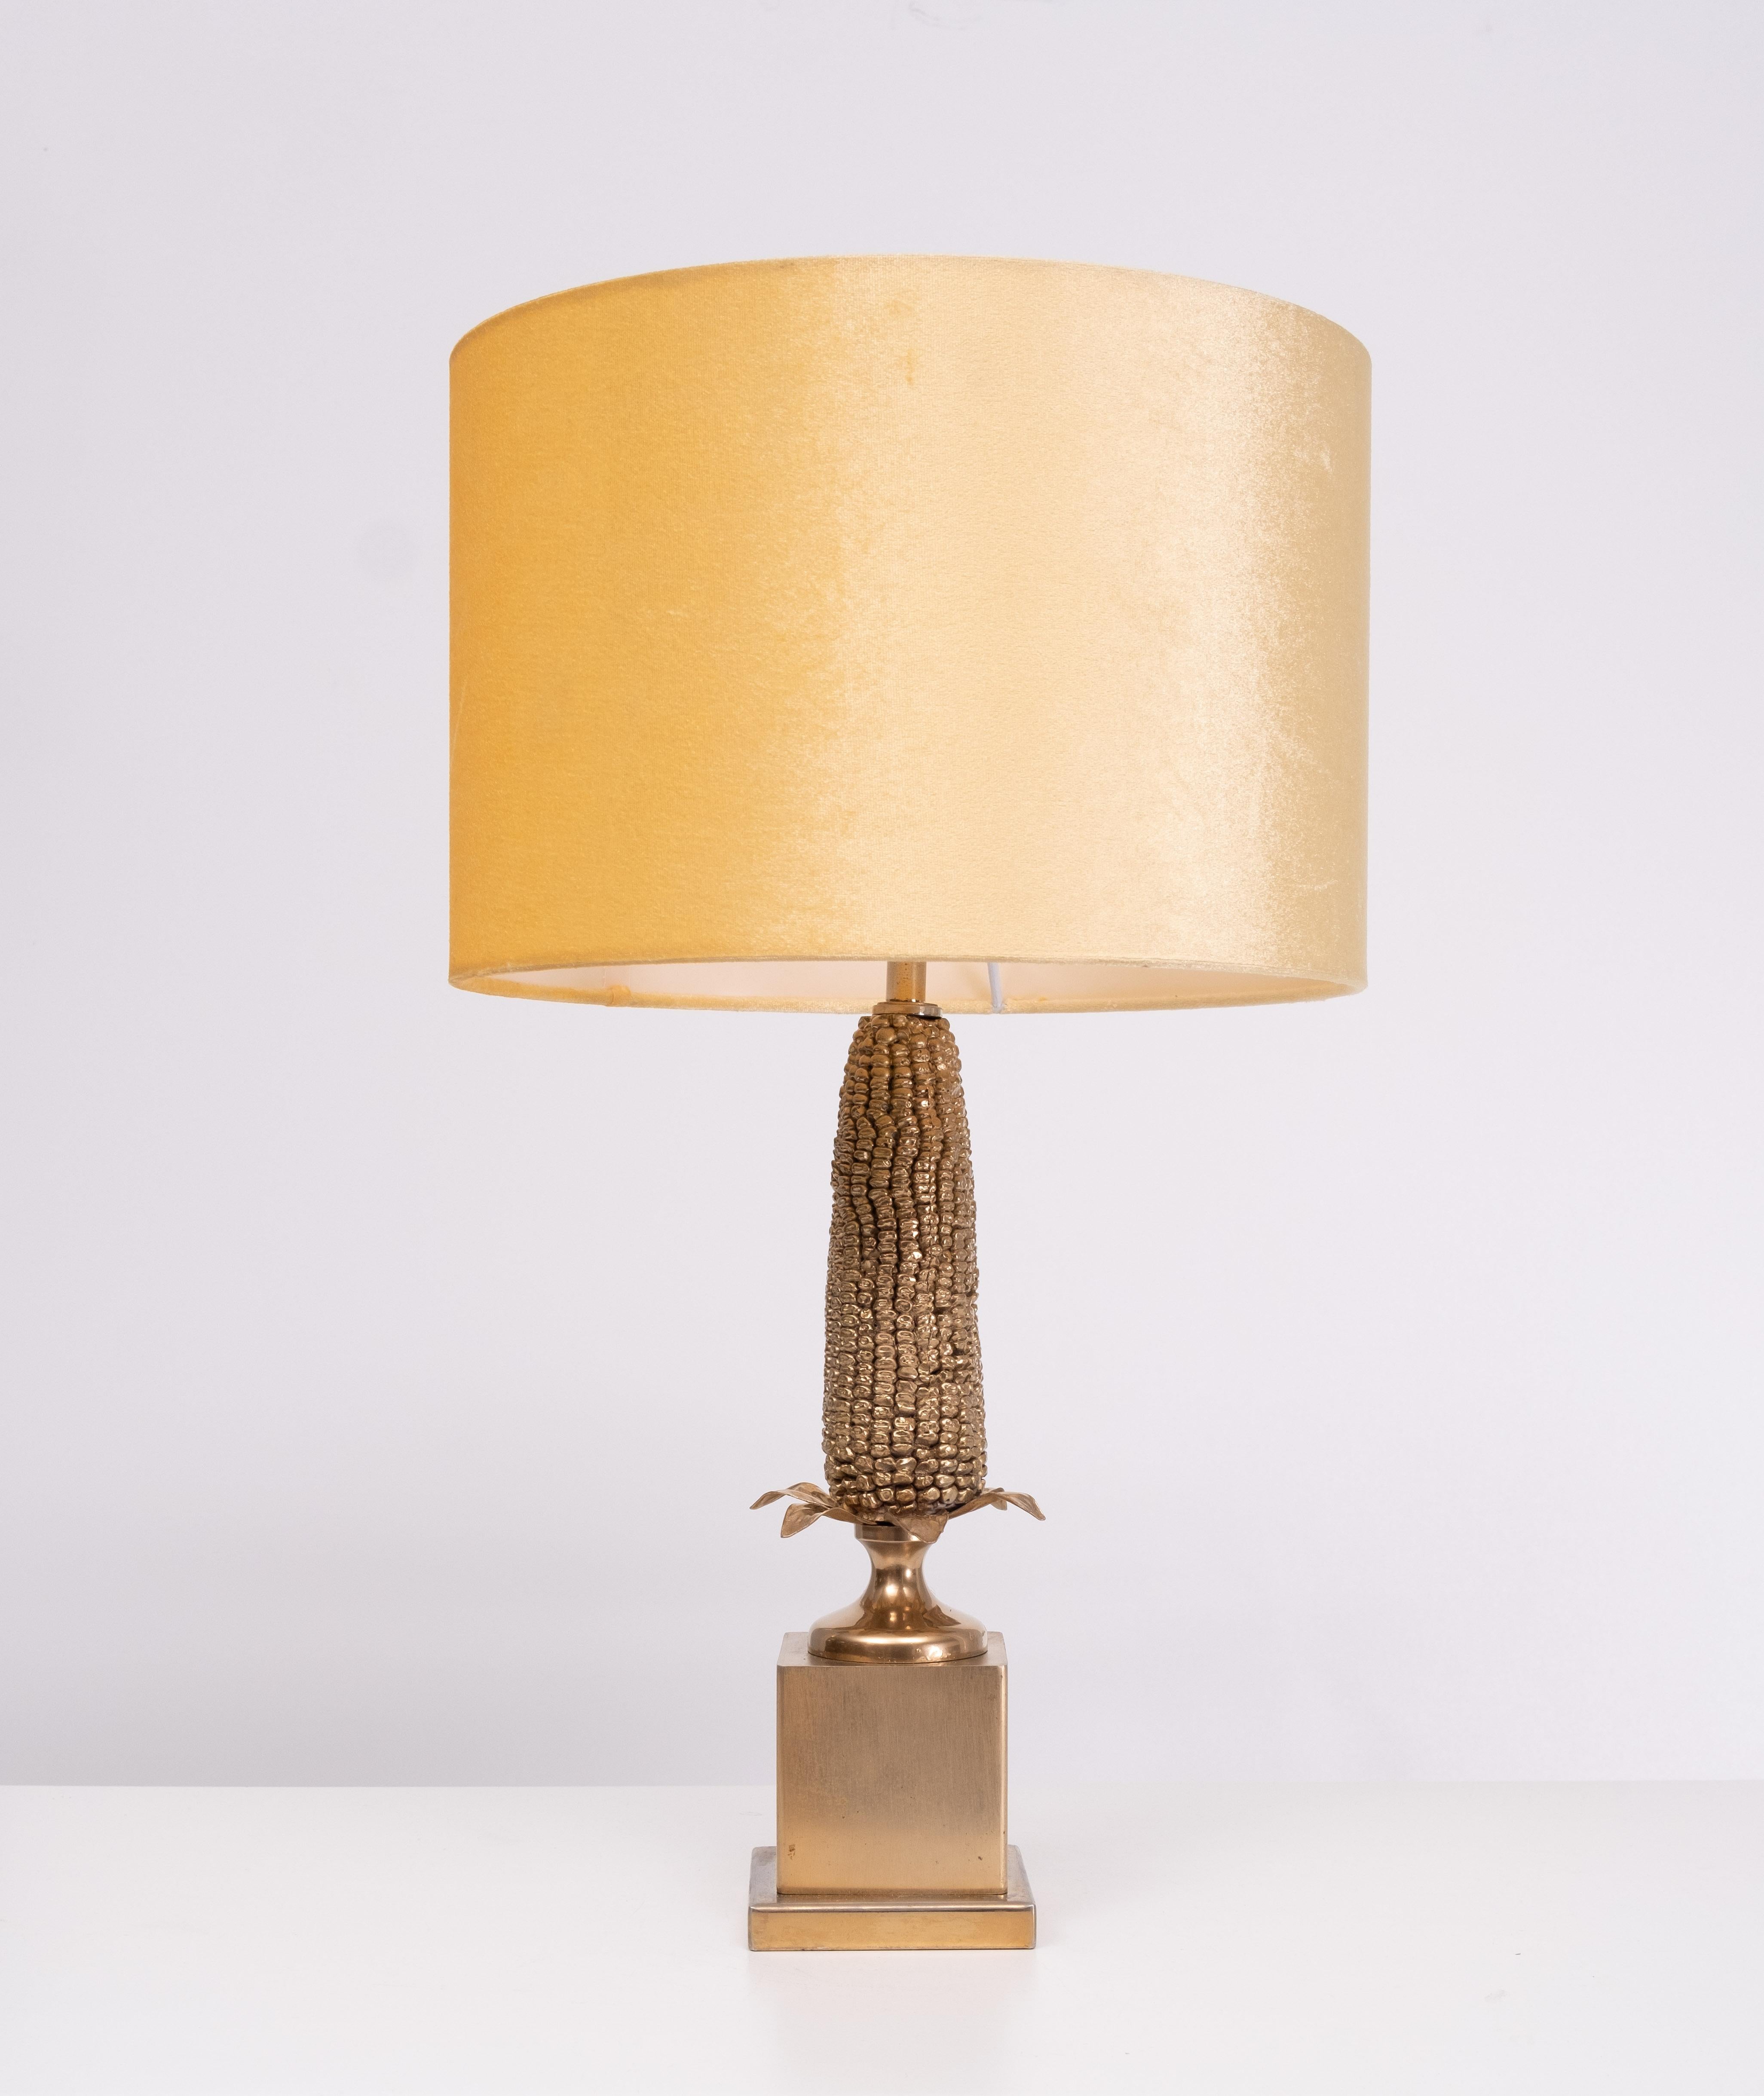 Maison Charles, France. Lampe de table conçue comme un épi de maïs avec base et feuilles en laiton. Années 1960 / 1970. Livré avec une nouvelle nuance de couleur Velvet Gold.